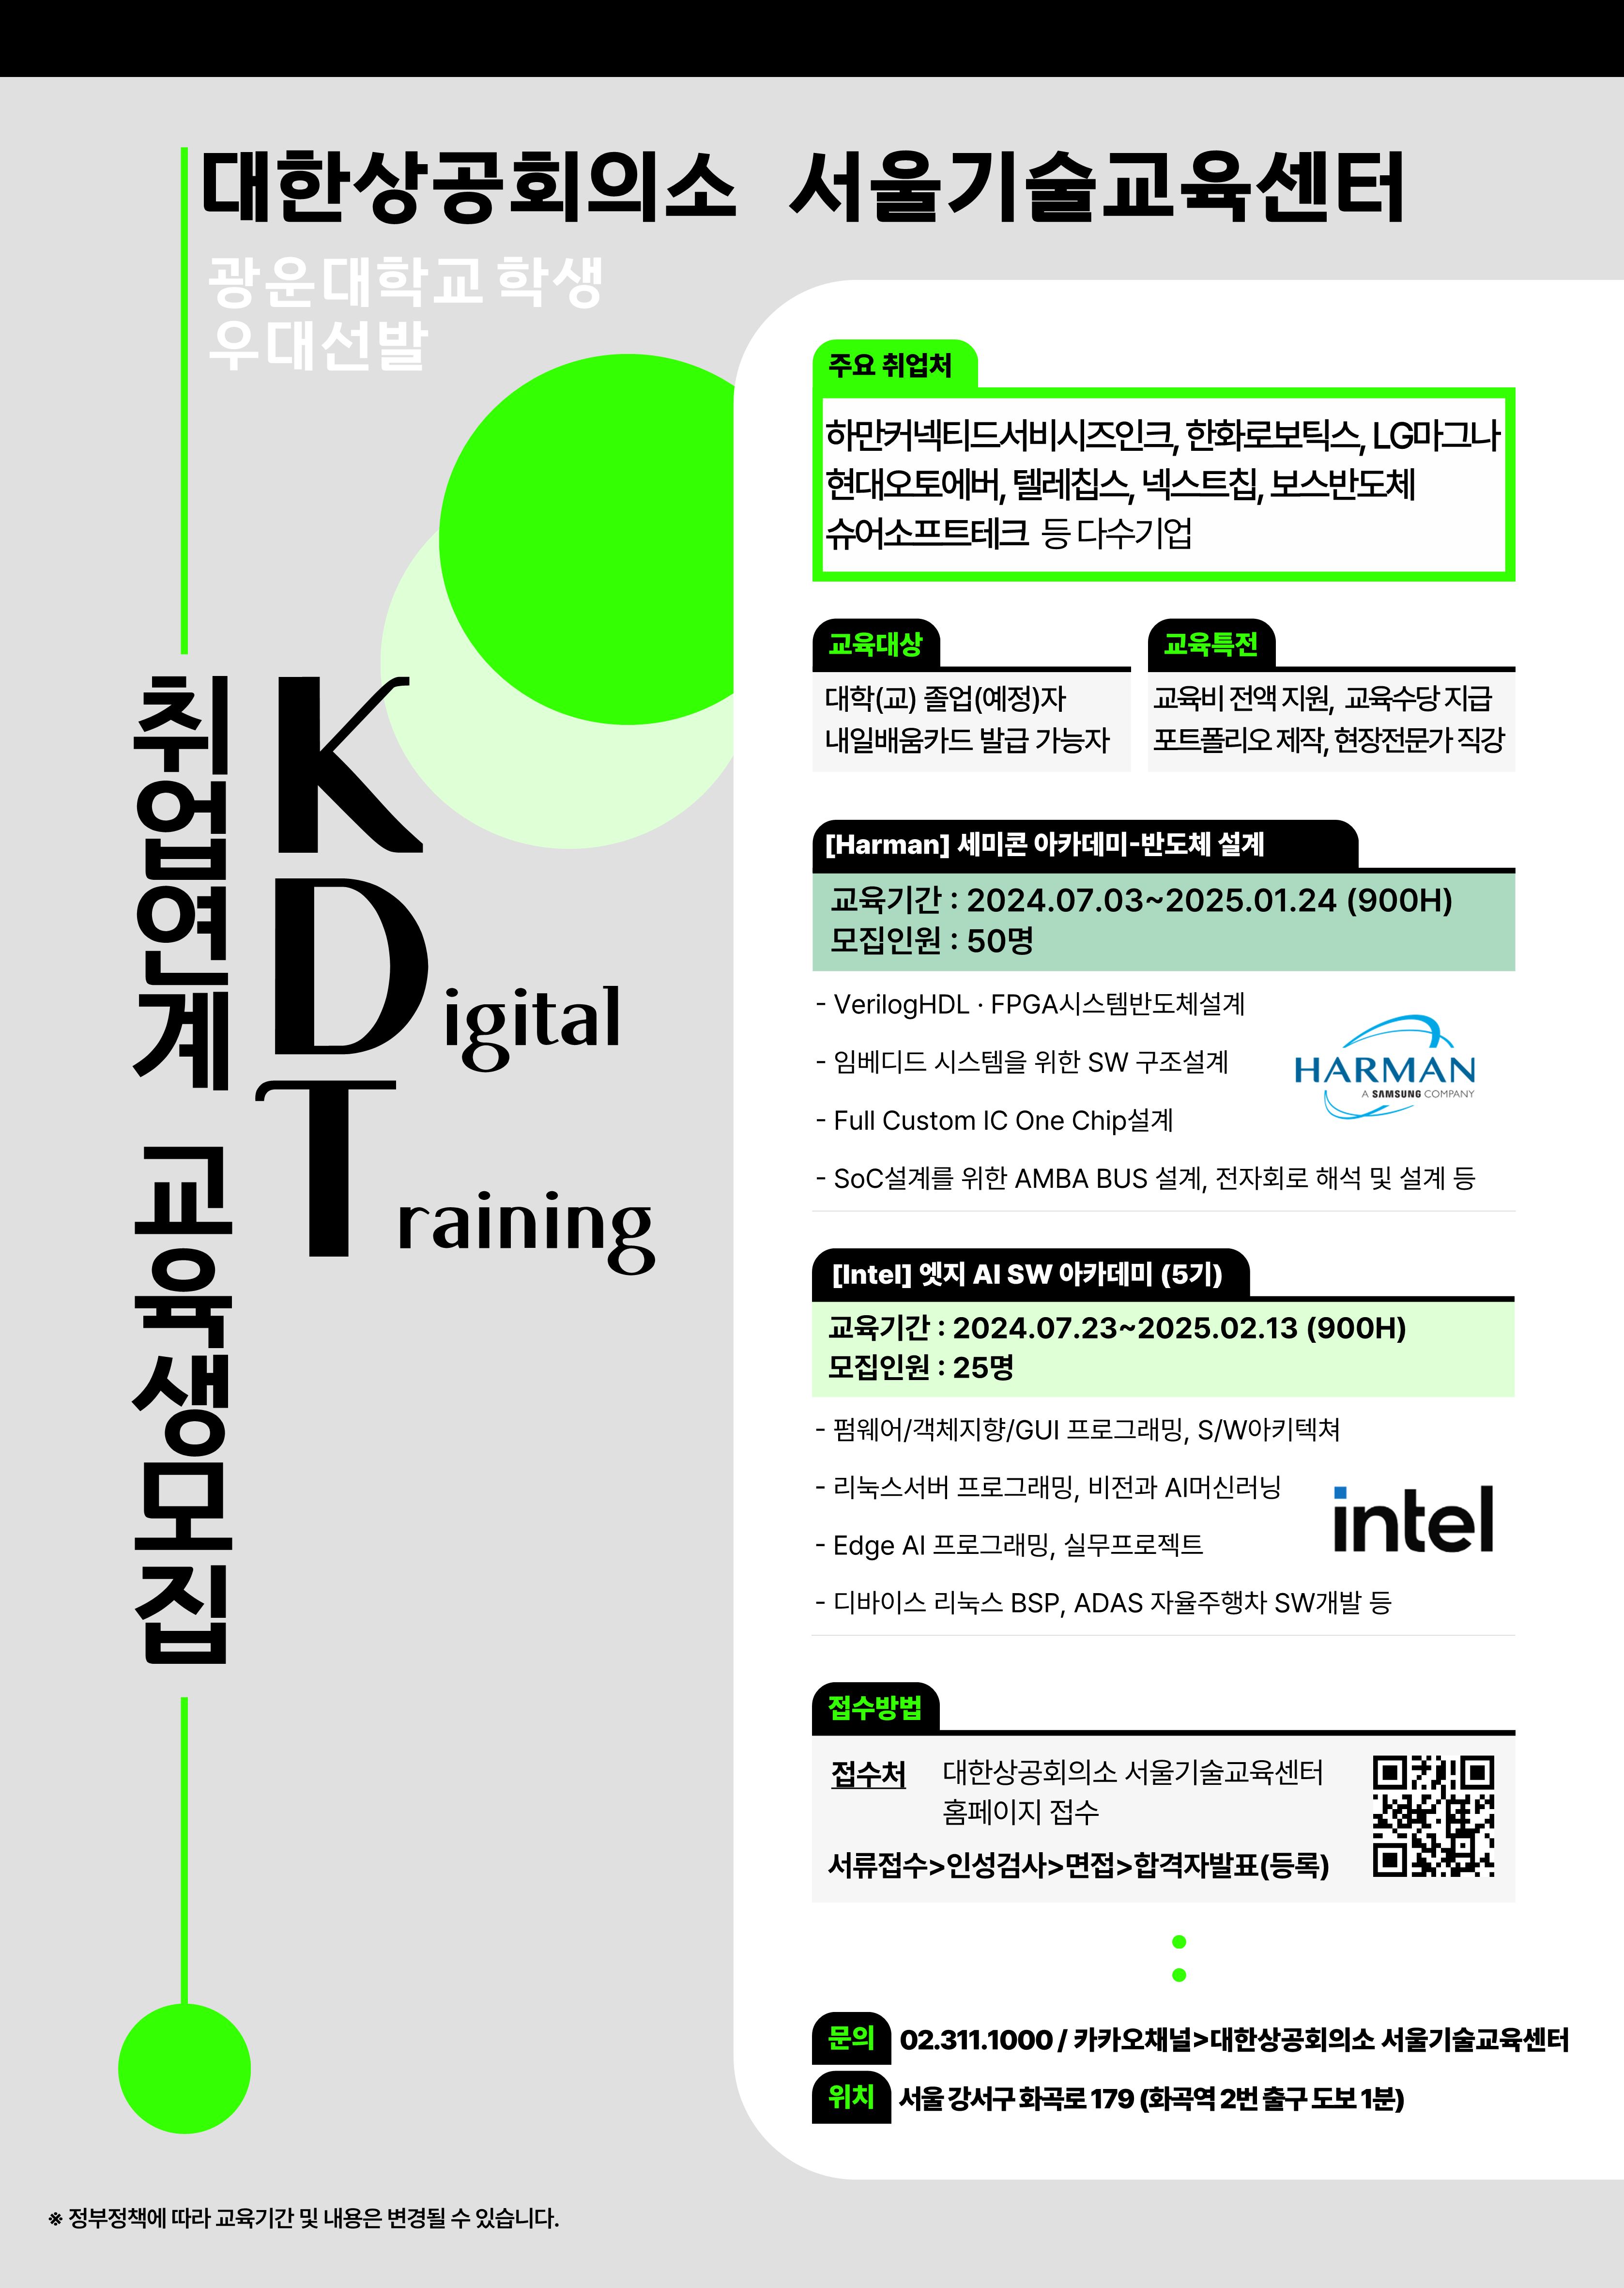 대한상공회의소 서울기술교육센터 7월 개강과정 안내 포스터